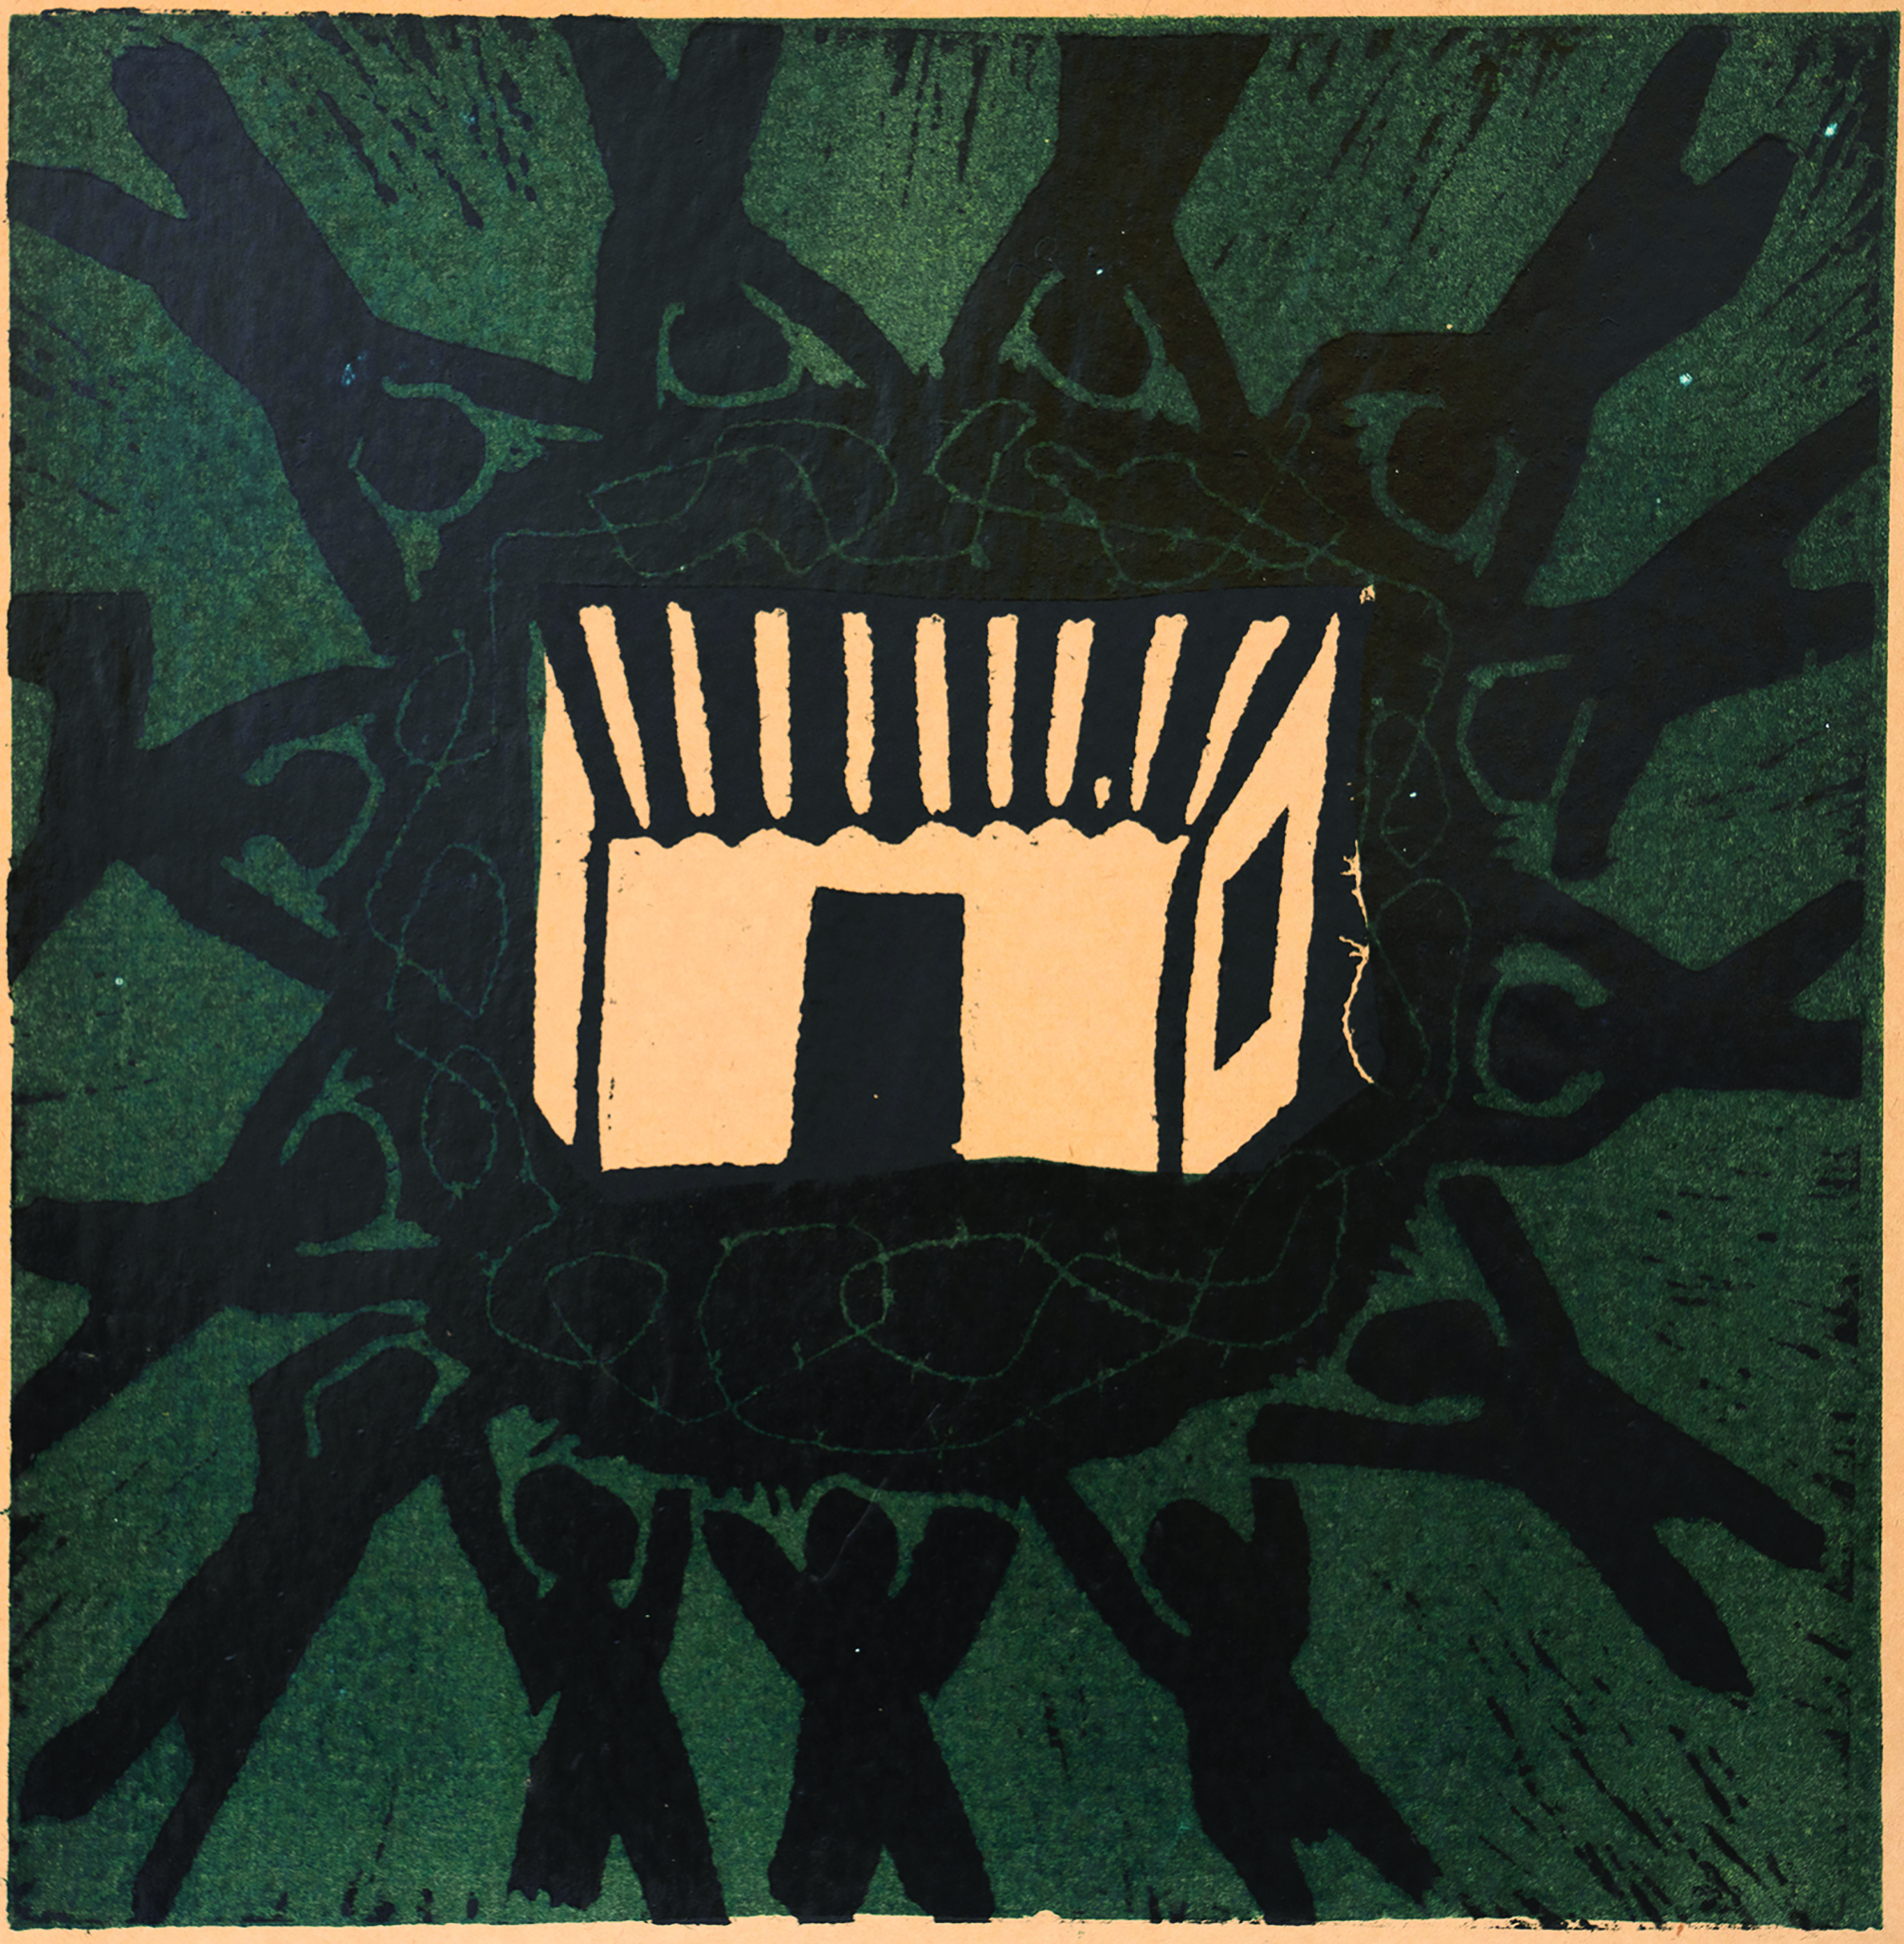 ΧΑΜΠΗΣ, ΤΑ ΣΠΙΤΙΑ ΜΑΣ (τετράγωνον 2), ξυλογραφία 1979